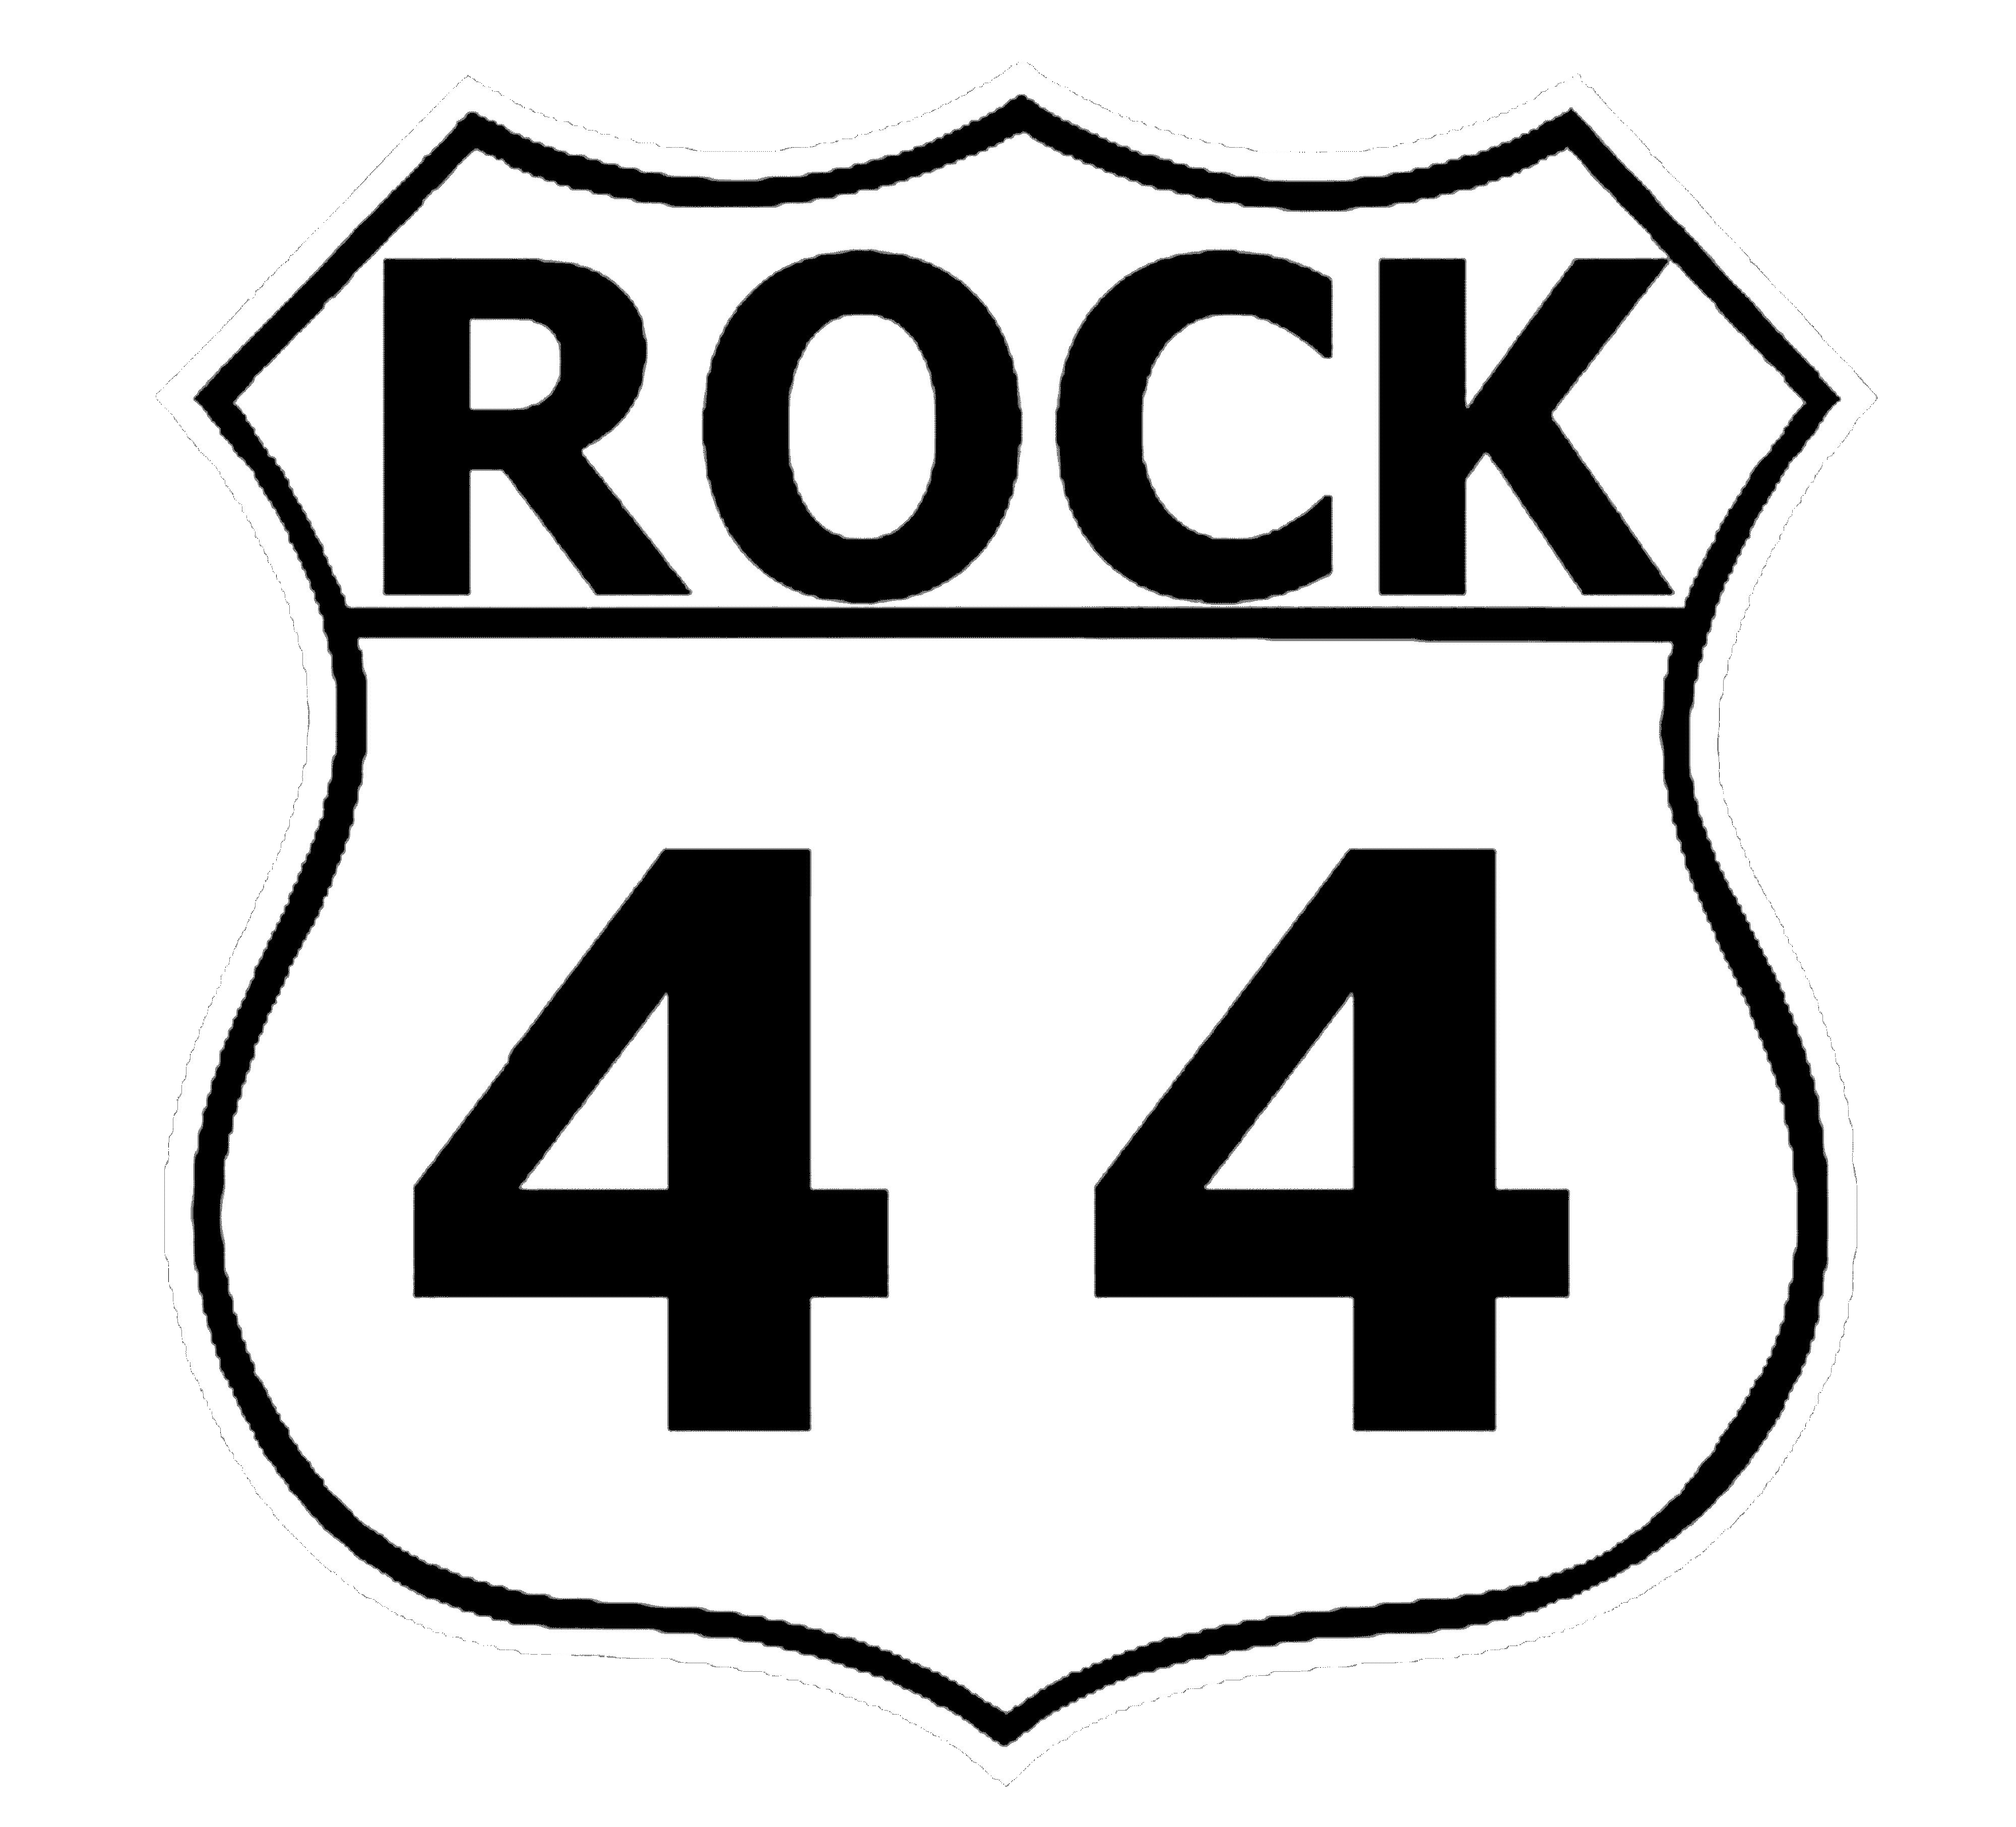 Rock44